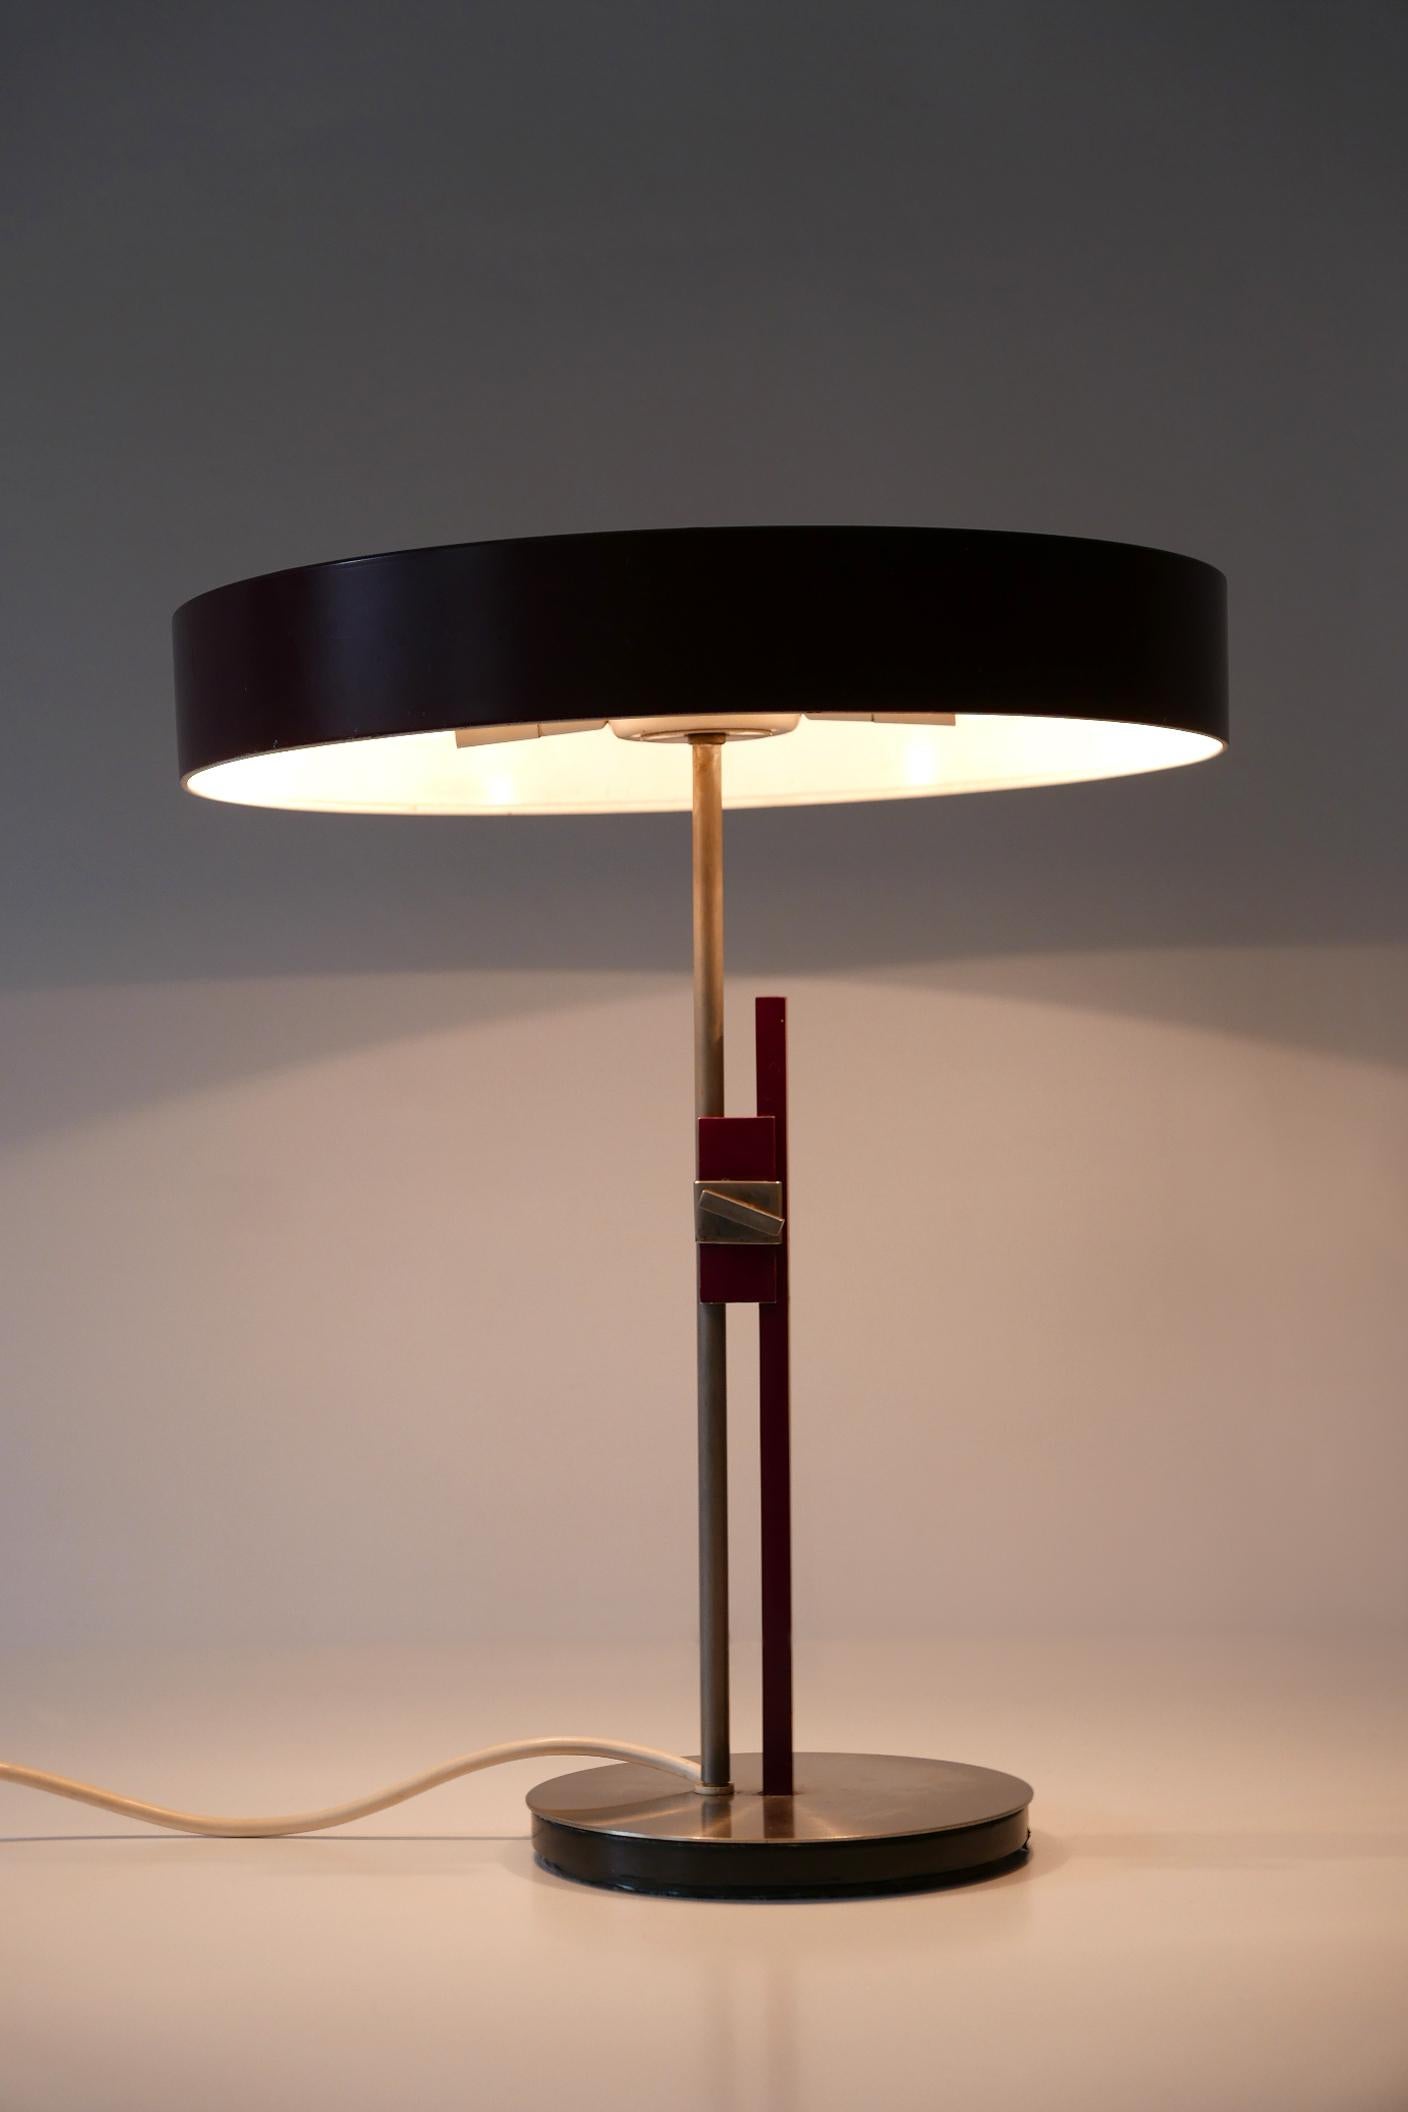 Luxury Mid-Century Modern President Table Lamp by Kaiser Leuchten 1960s Germany 4